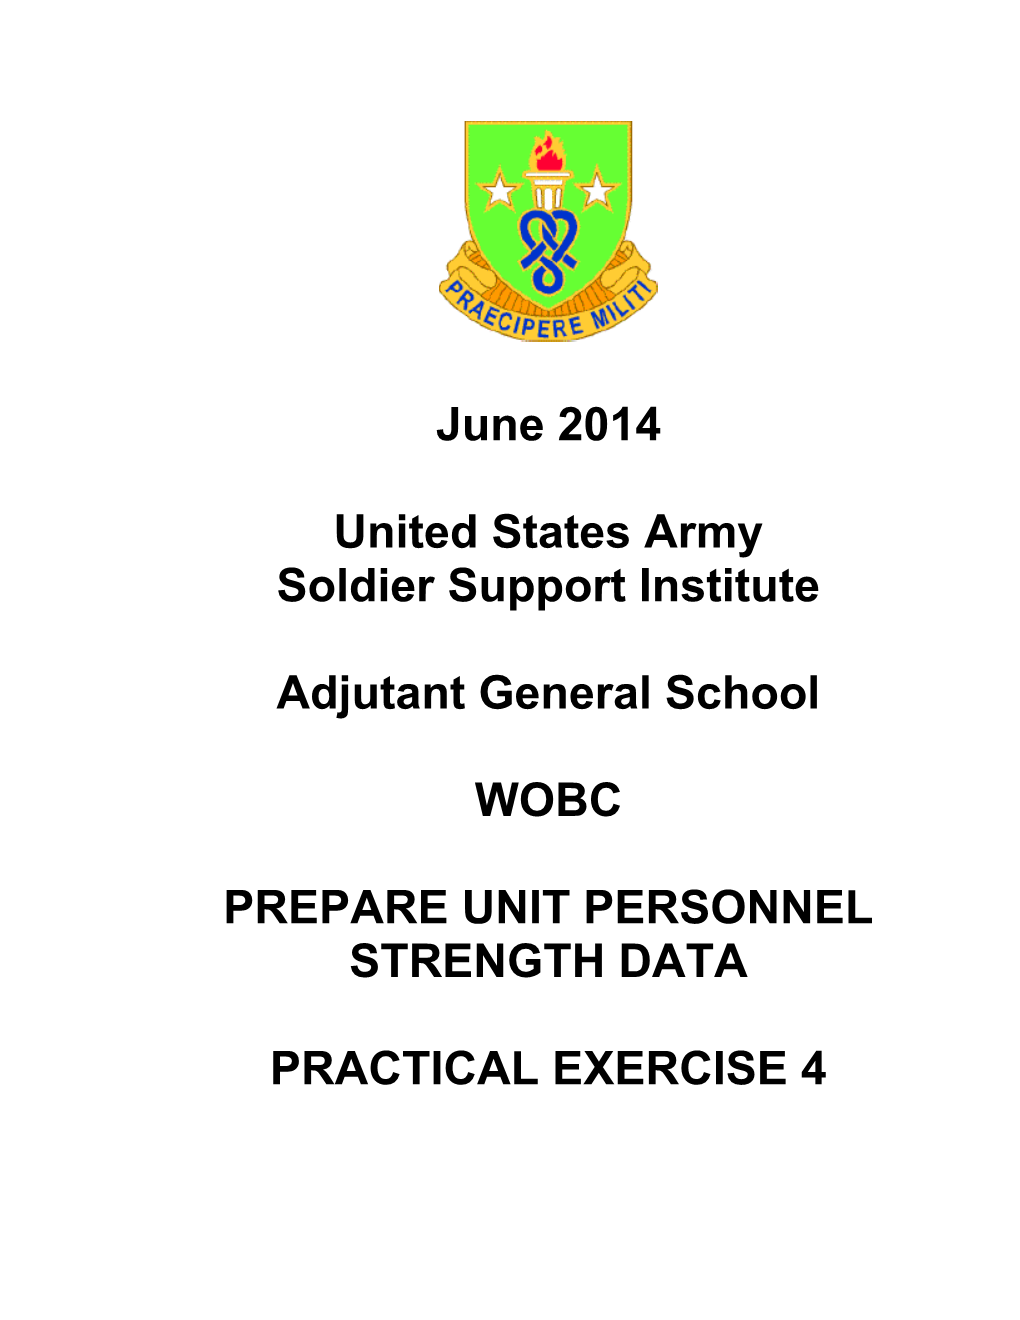 Prepare Unit Personnel Stregnth Data